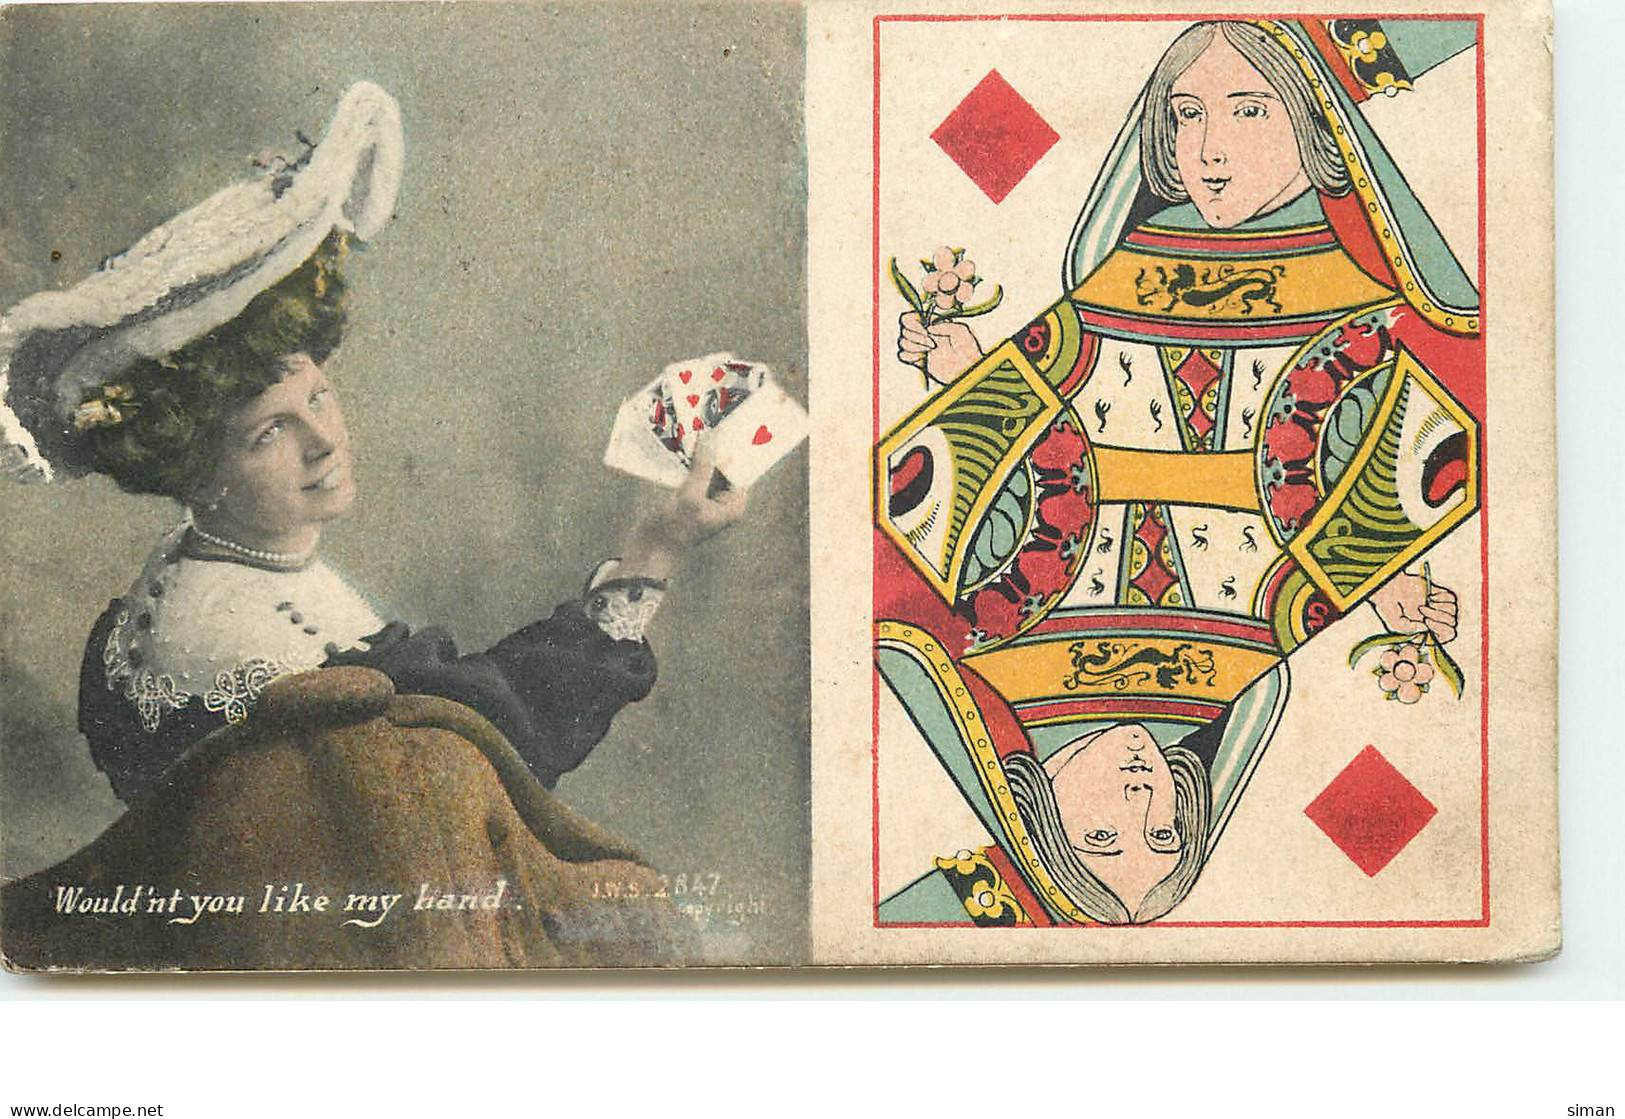 N°16966 - Dame De Carreau - Would'nt You Like My Hand - Spielkarten